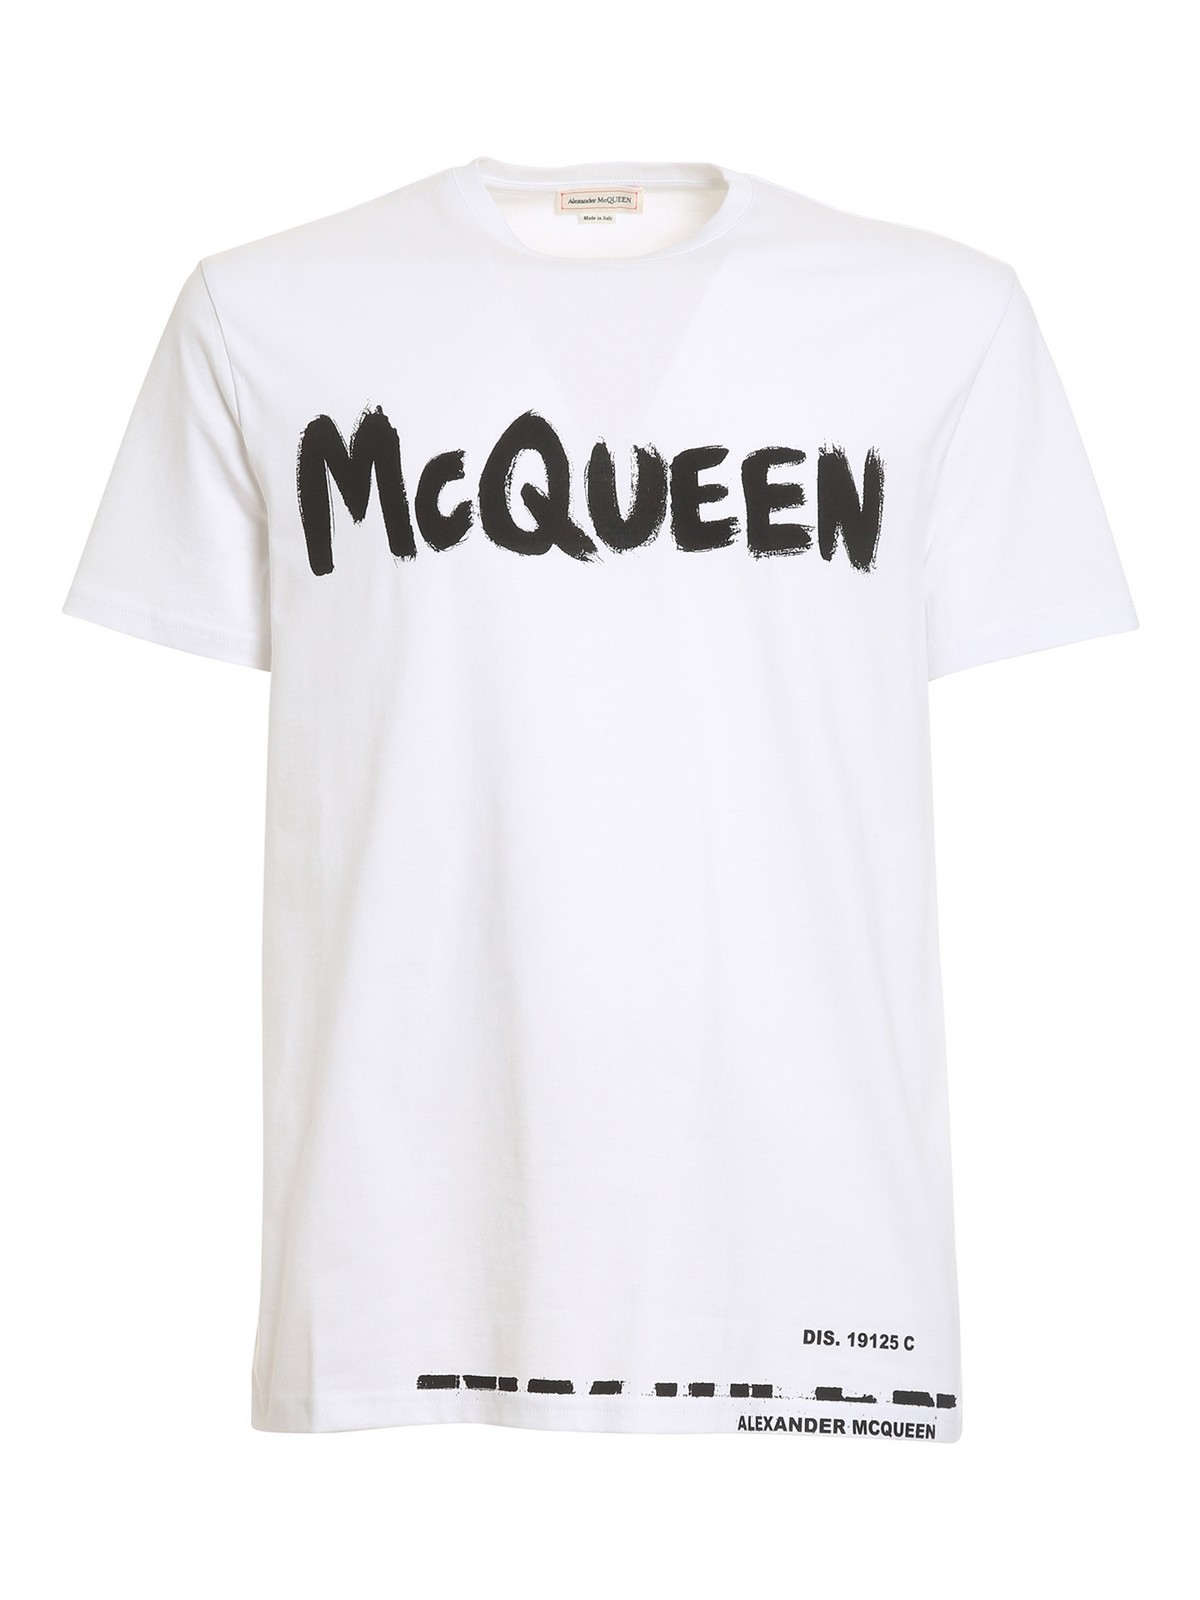 Tシャツ Alexander Mcqueen - Tシャツ - 白 - 622104QSZ570900